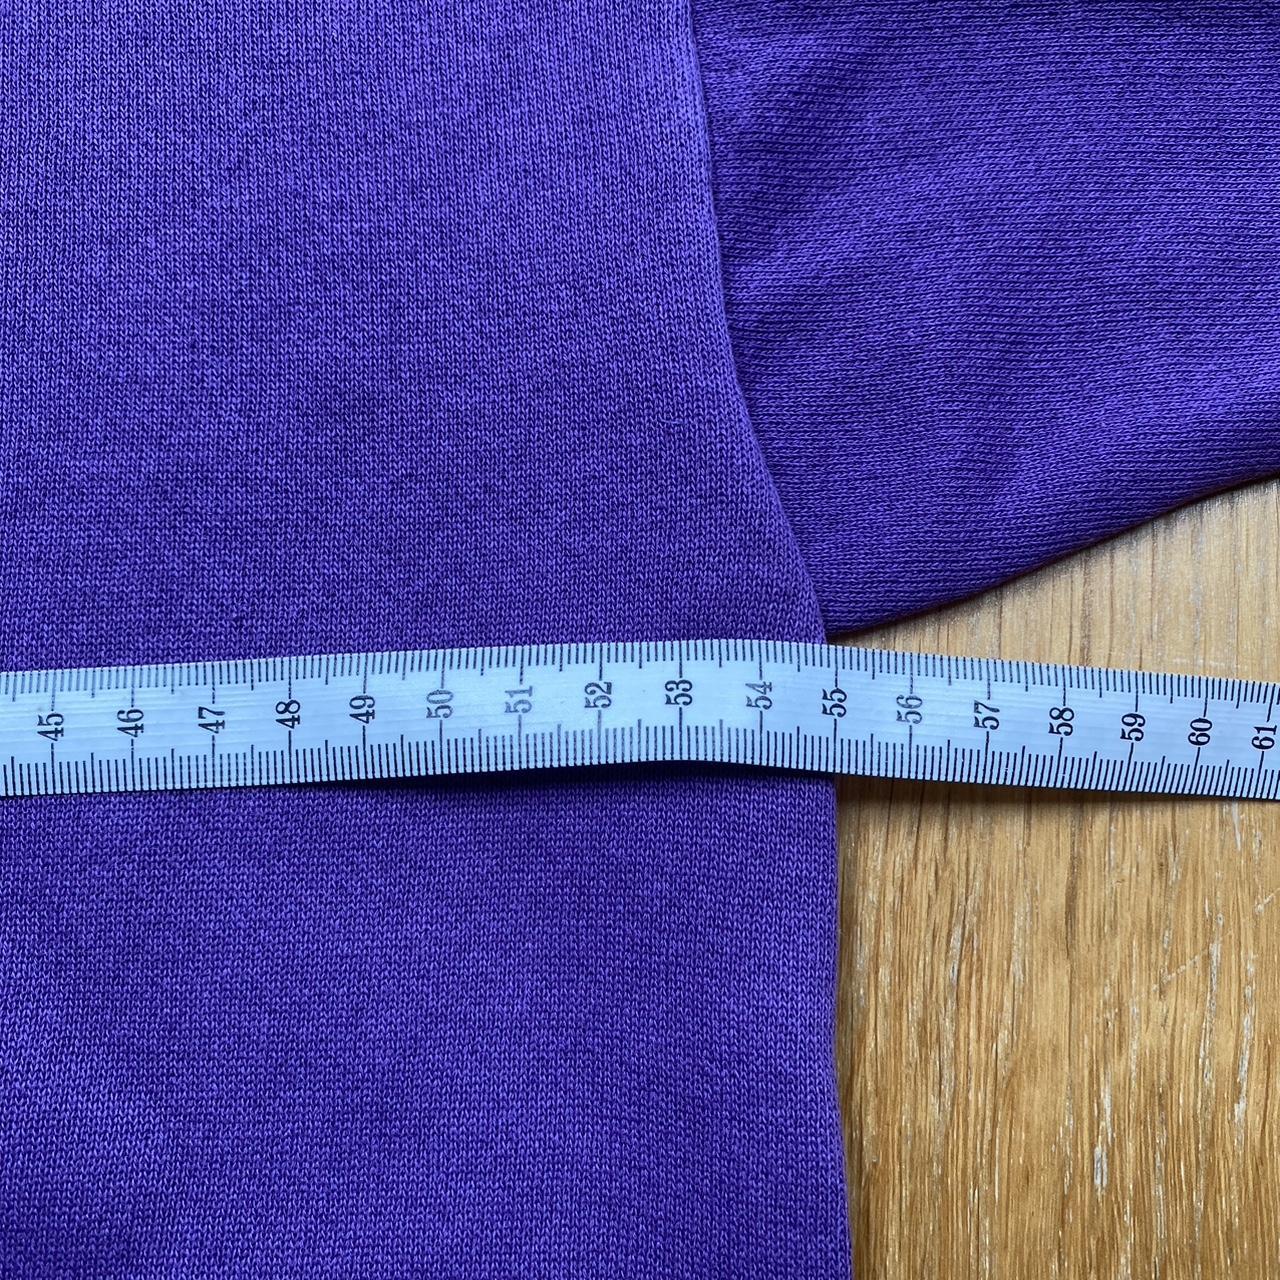 Vintage blank purple sweatshirt Tultex brand made in... - Depop